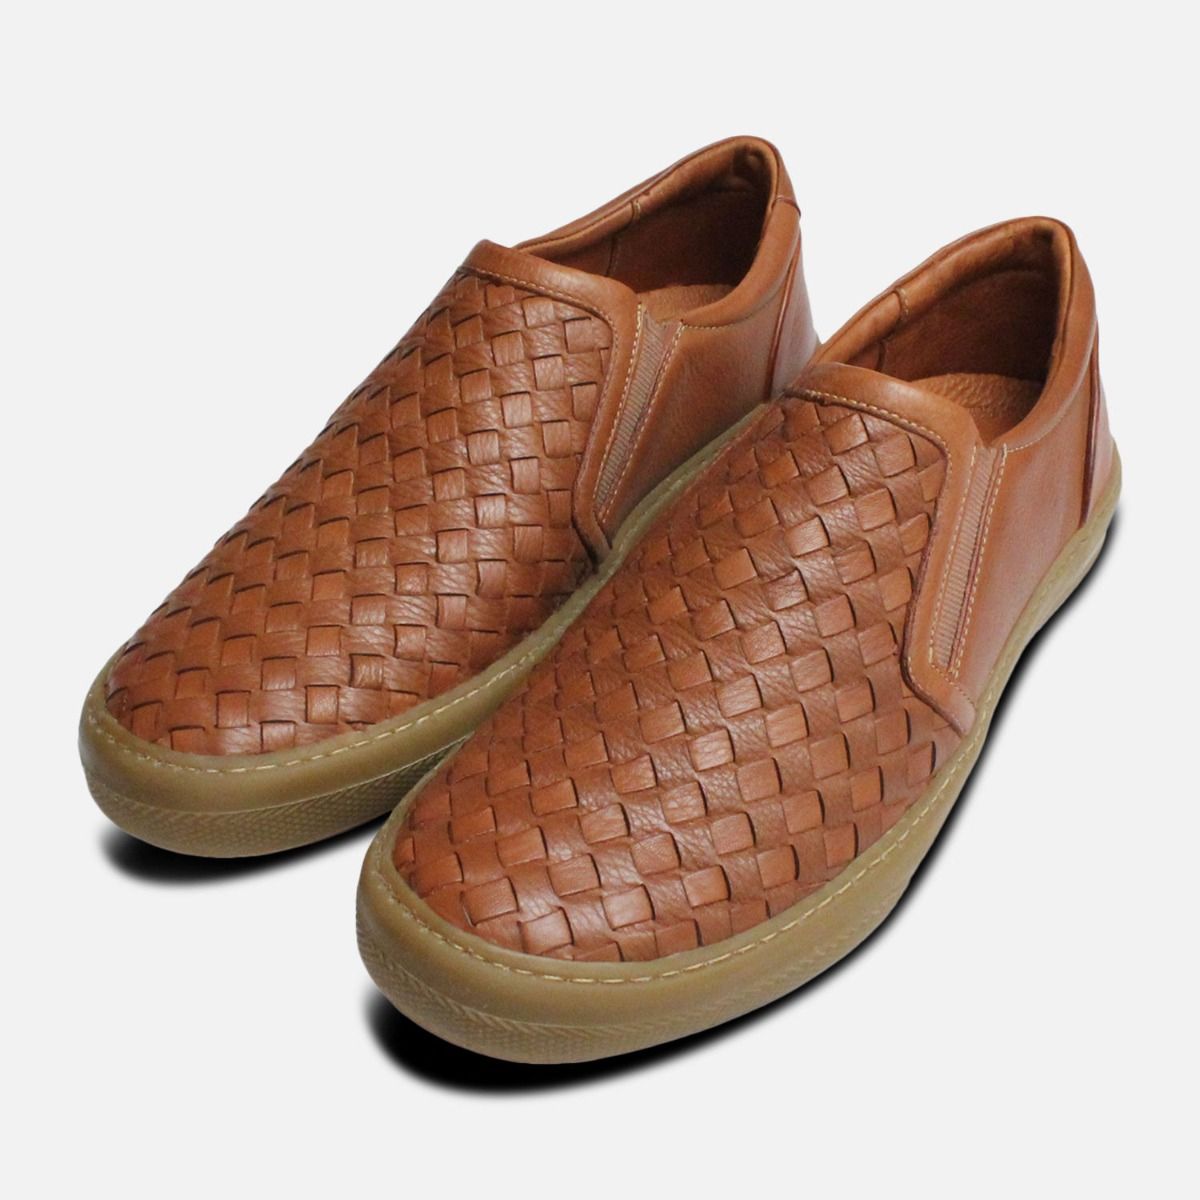 Mens Leather Base London Propelled Designer Shoe Slip On Formal Shoes Brown 6-7 